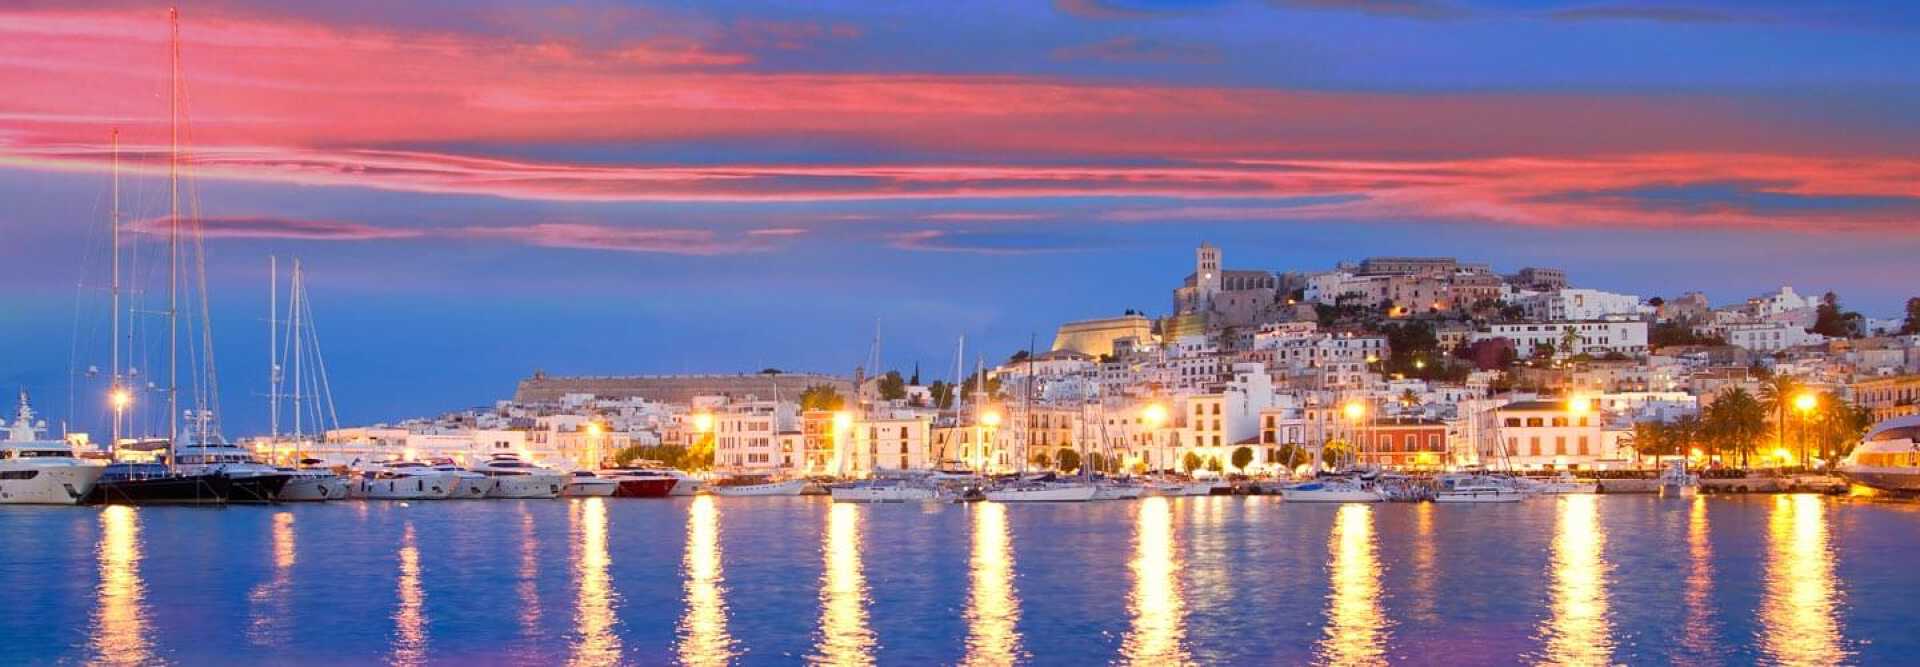 Vue du coucher de soleil depuis les bateaux et les yachts dans le port avec l'église de la ville d'Ibiza